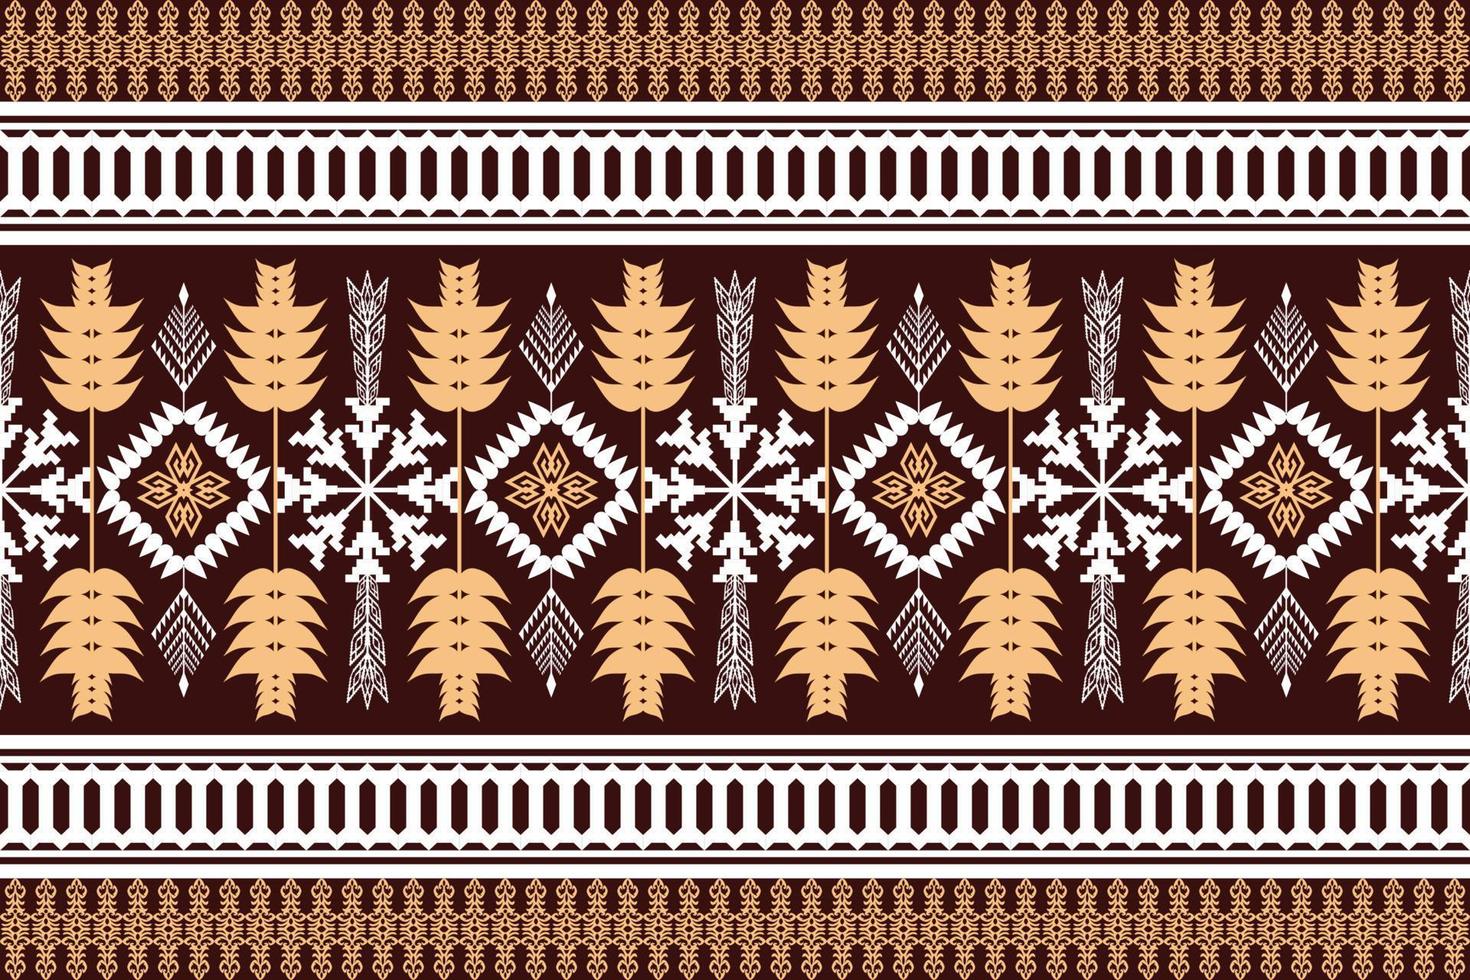 geometrische ethnische orientalische traditionelle pattern.figur tribal stickerei style.design für hintergrund, tapete, kleidung, verpackung, stoff, vektorillustration vektor